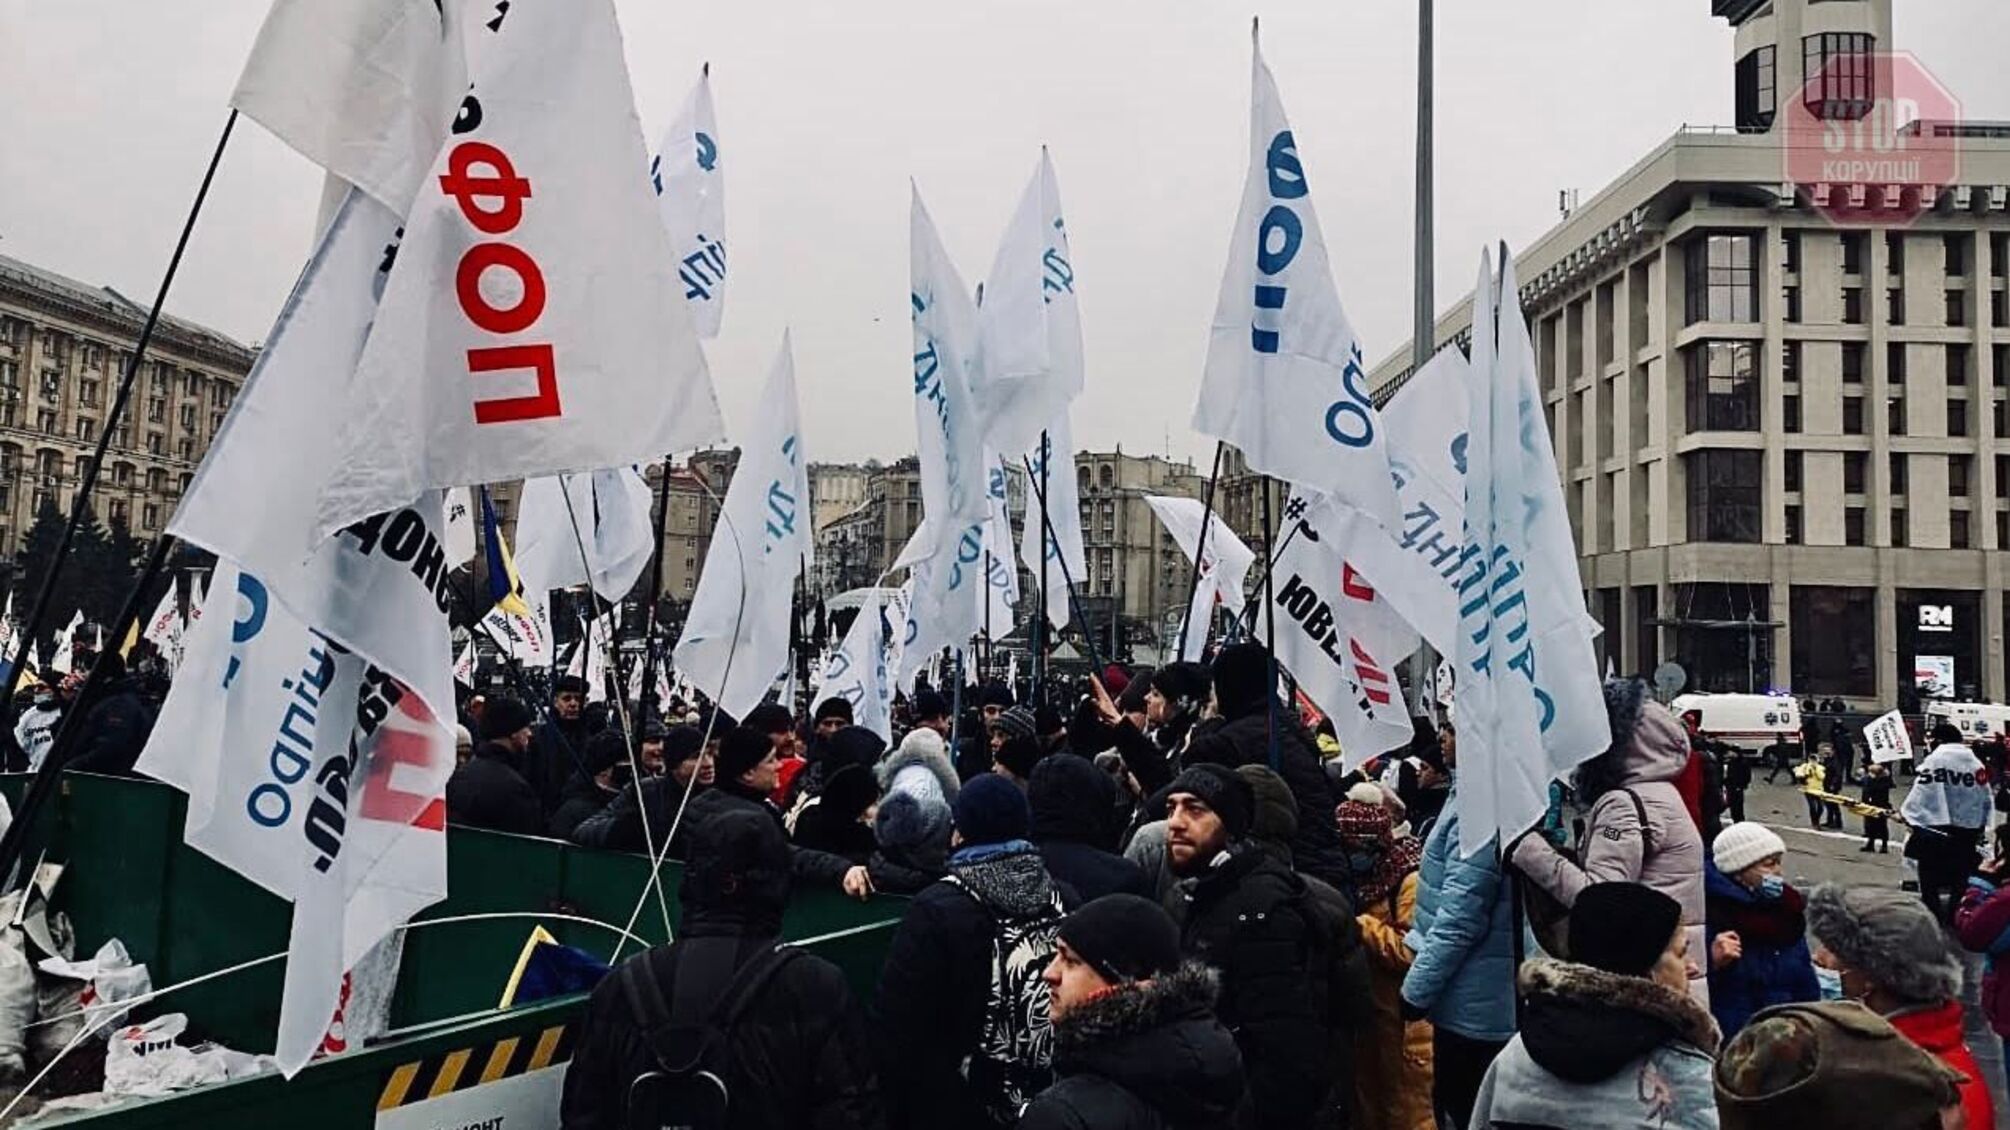 Більше тисячі людей: на Майдані ФОПи розклали палатки та готуються безстроково протестувати (фото)